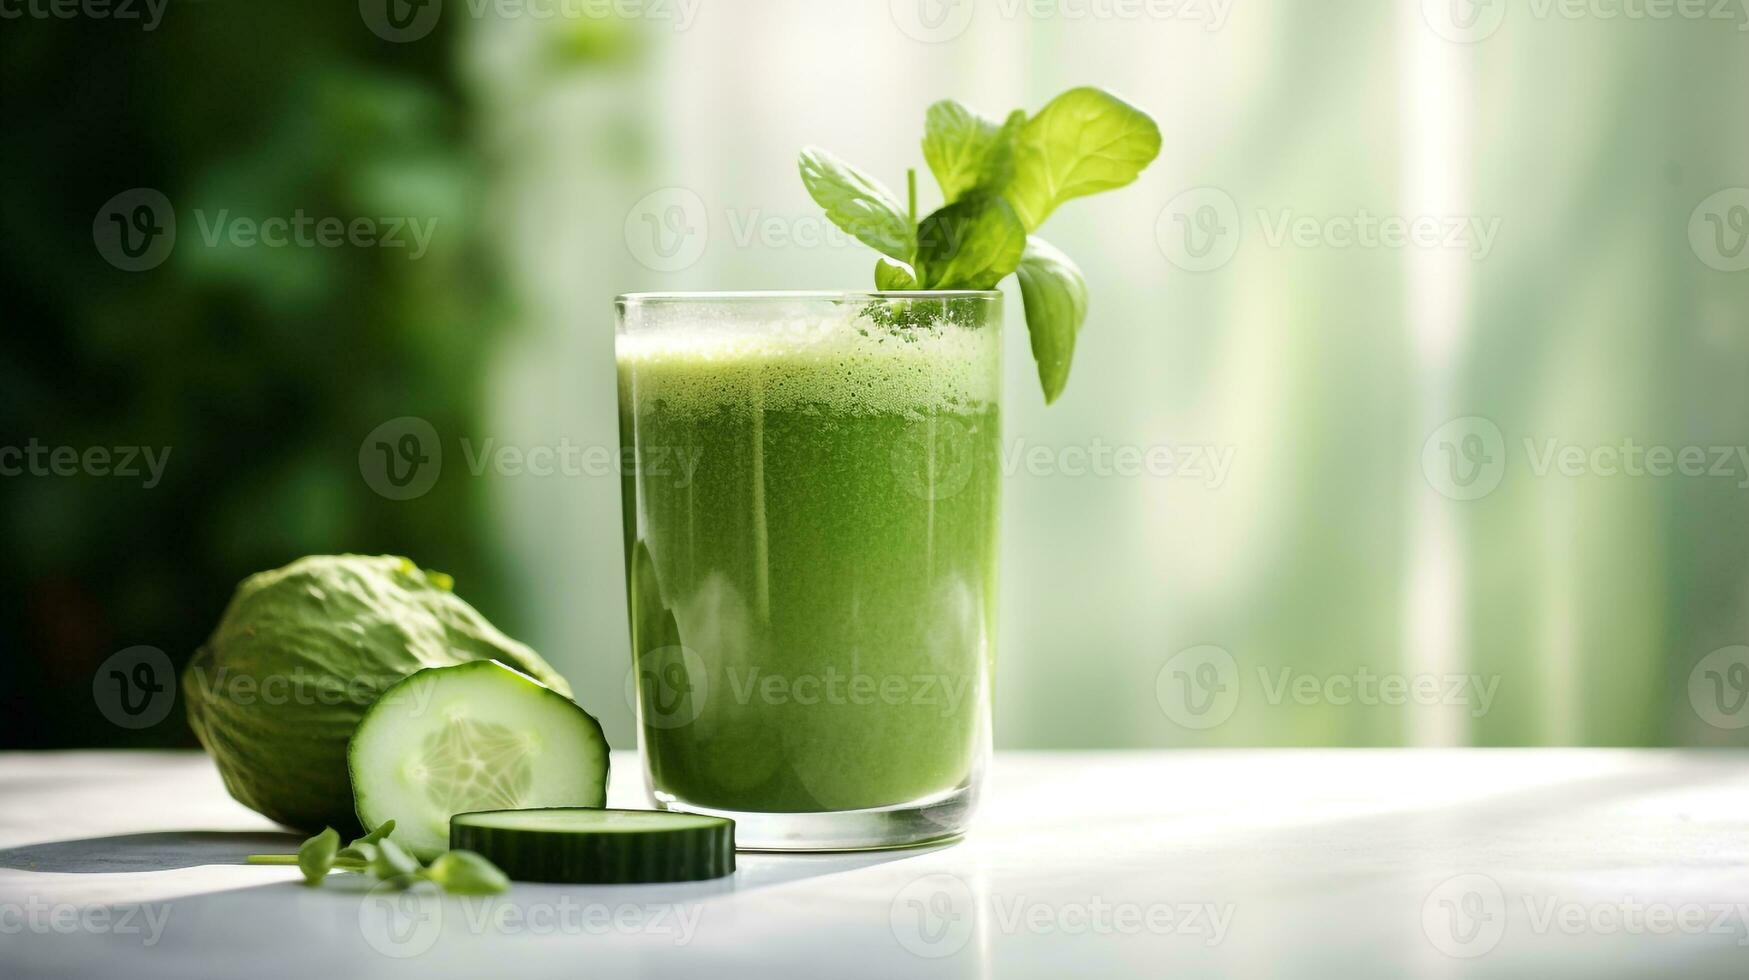 AI generated Photo of vegan juice. Generative AI